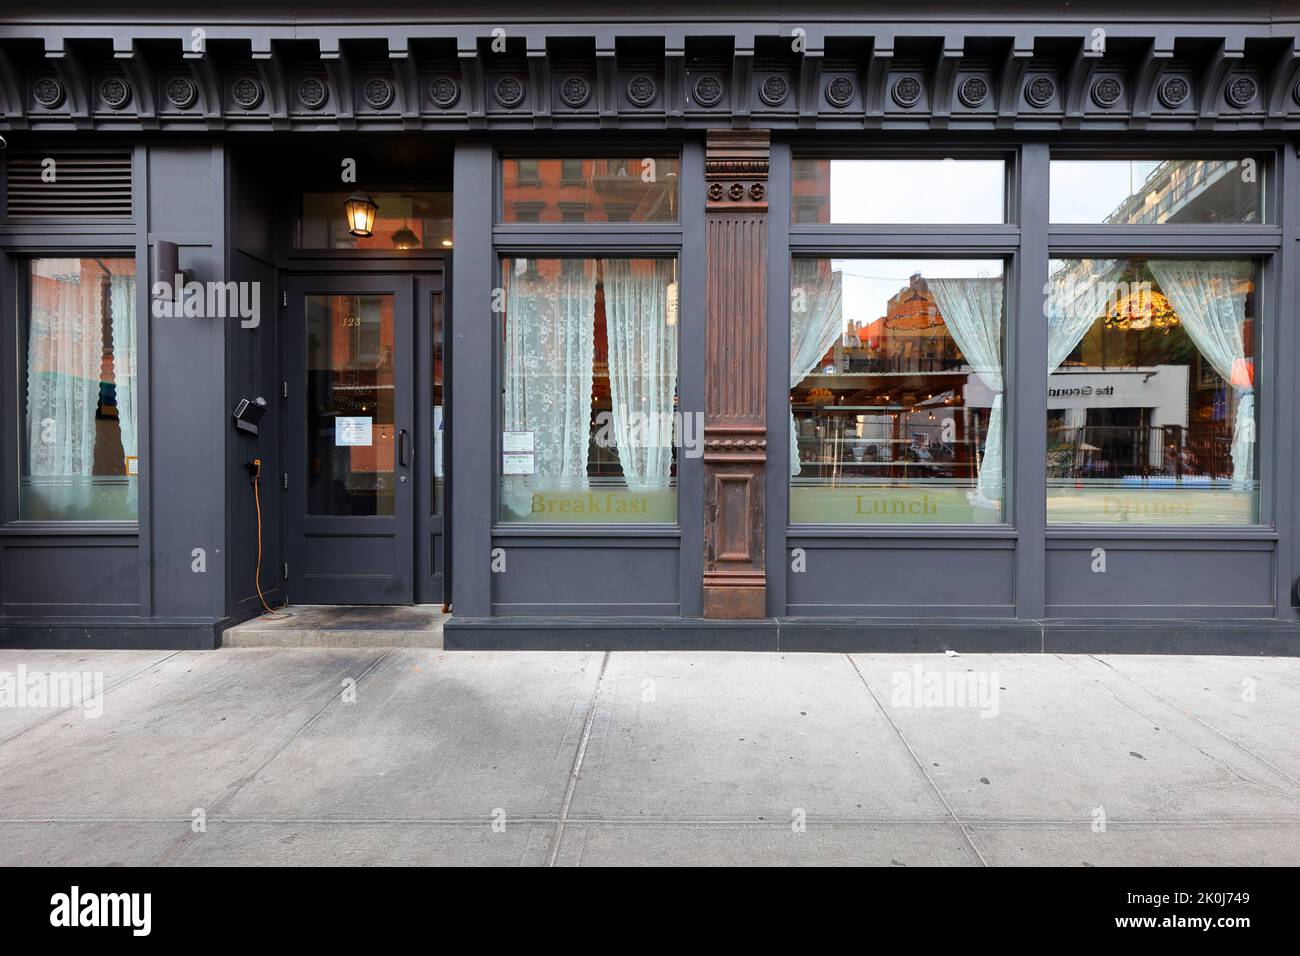 Golden Diner, 123 Madison St, New York, boutique photo d'un restaurant asiatique servant des classiques américains mis à jour dans le quartier chinois de Manhattan/Lower East Side Banque D'Images